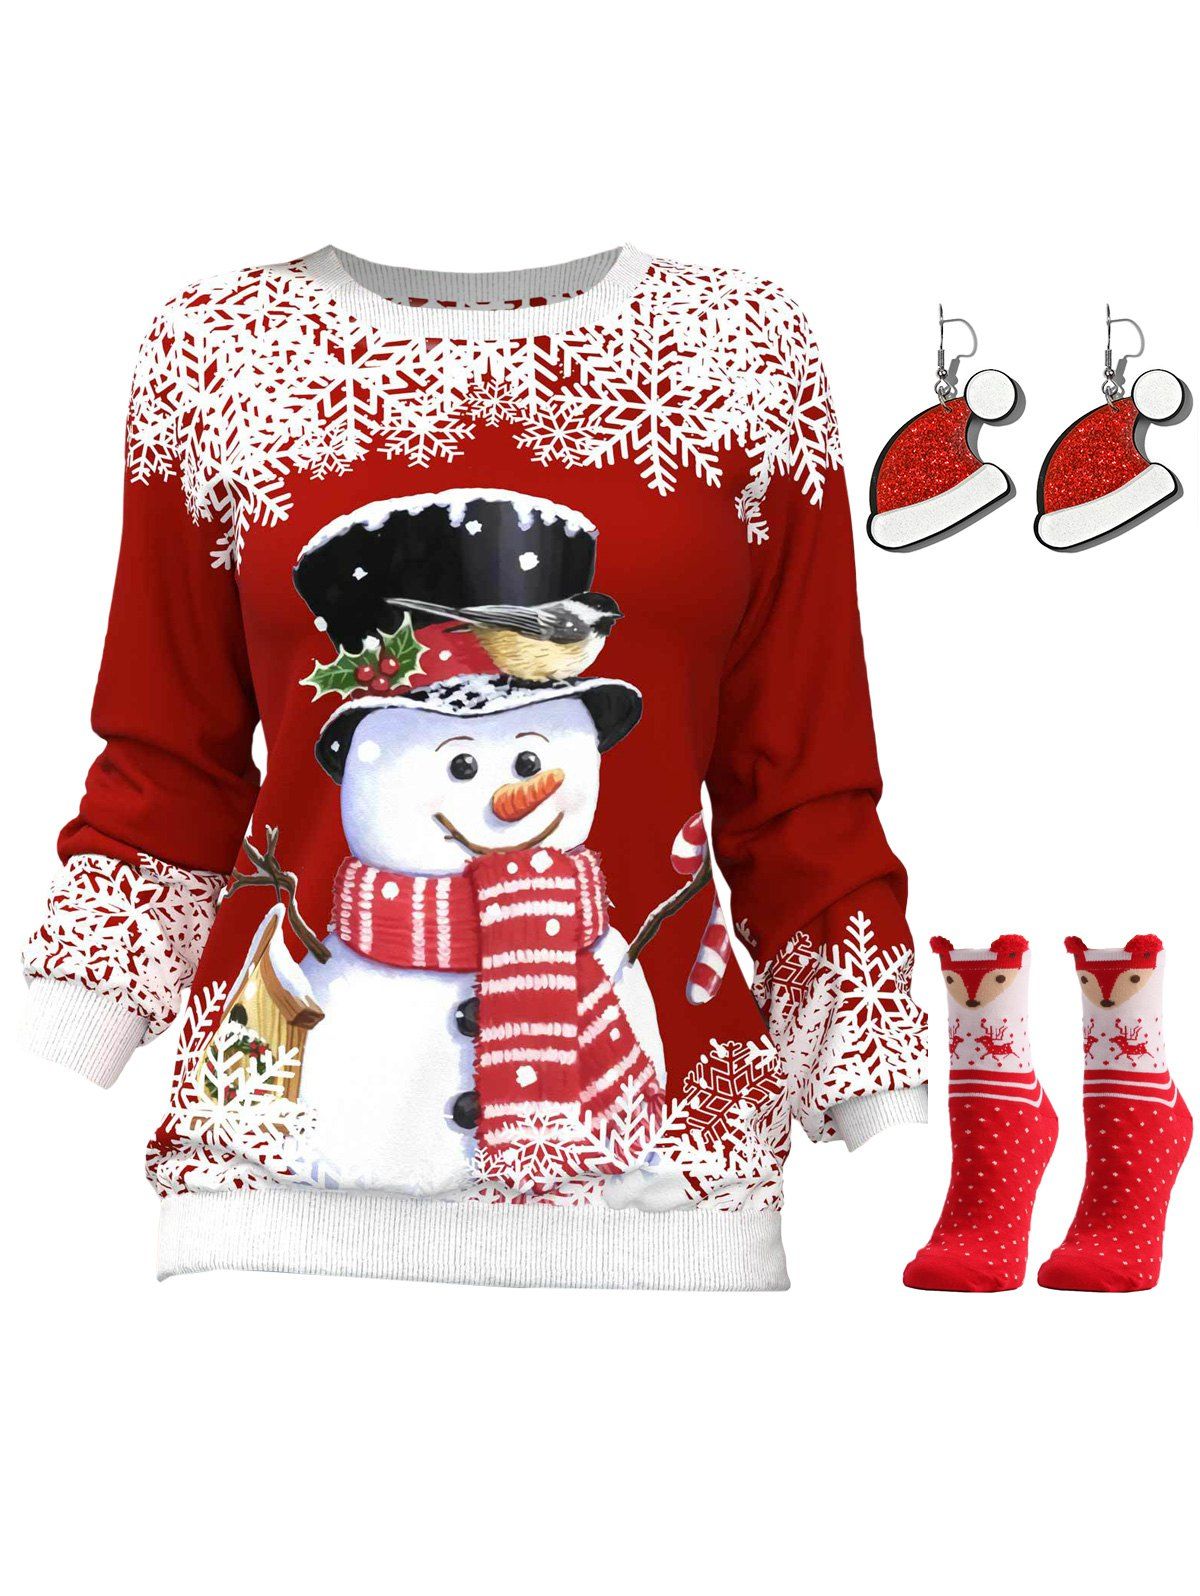 Snowman Snowflake Print Raglan Sleeve Sweatshirt And Earrings Fox Elk Print Socks Christmas Outfit - multicolor M